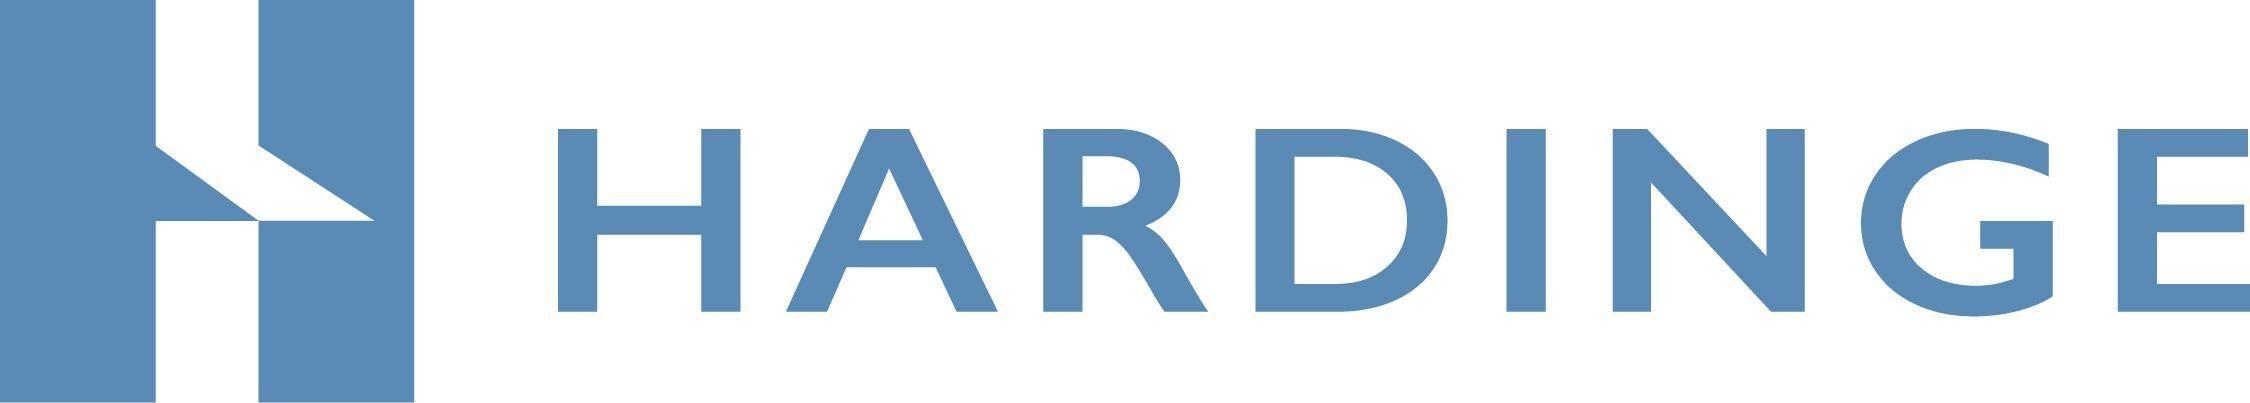 Hardinge Logo - Hardinge Competitors, Revenue and Employees Company Profile